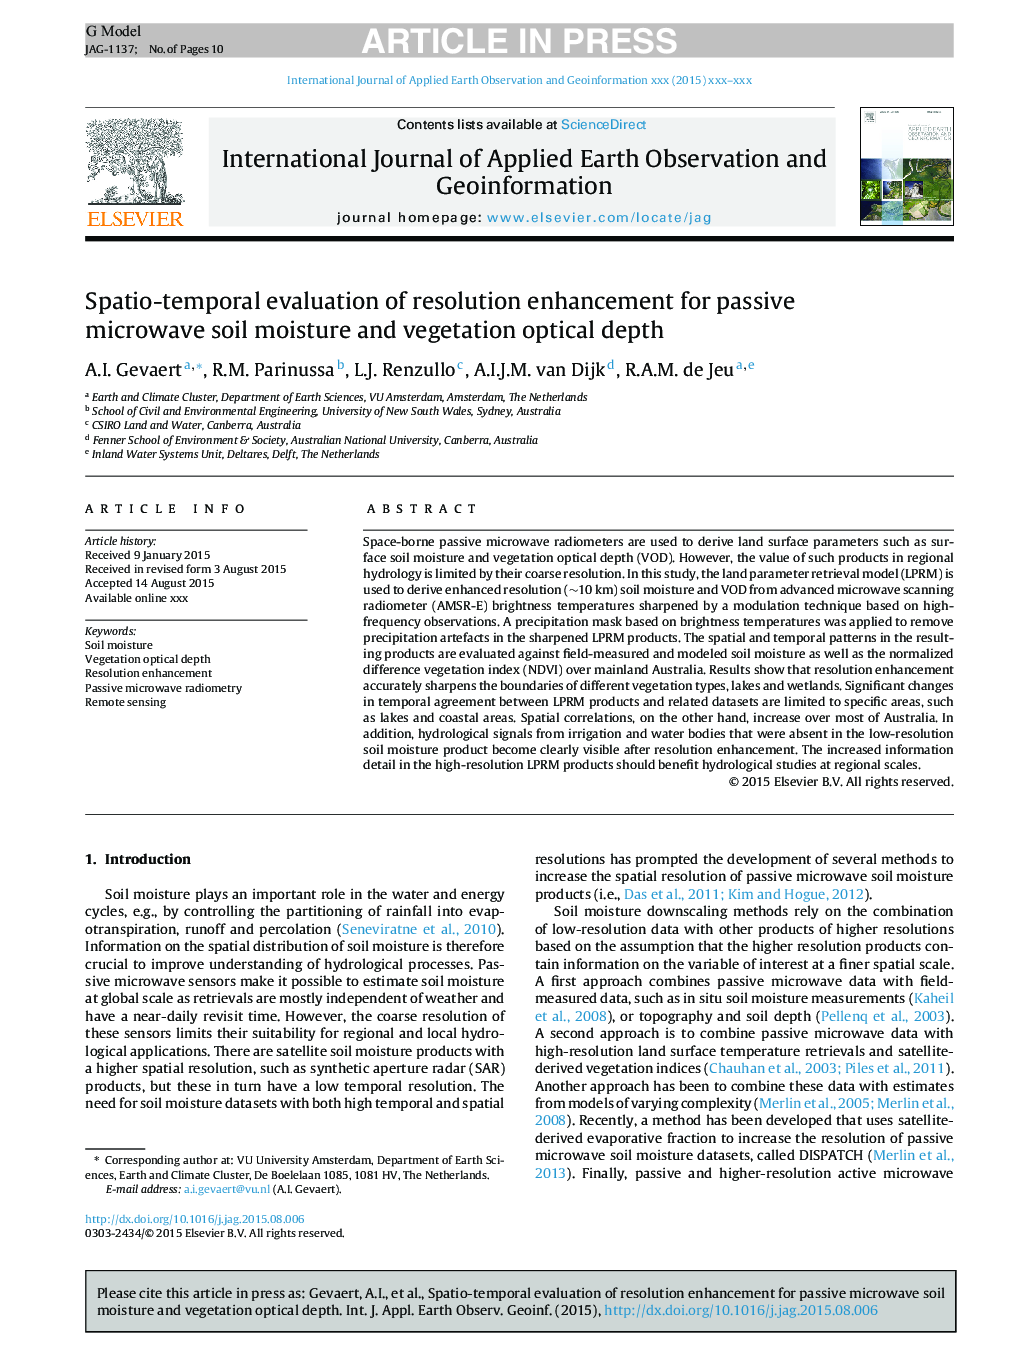 ارزیابی اسپکتیو-زمانی از افزایش رزولوشن برای رطوبت خاک مایکروویو غیر فعال و عمق نوری پوشش گیاهی 